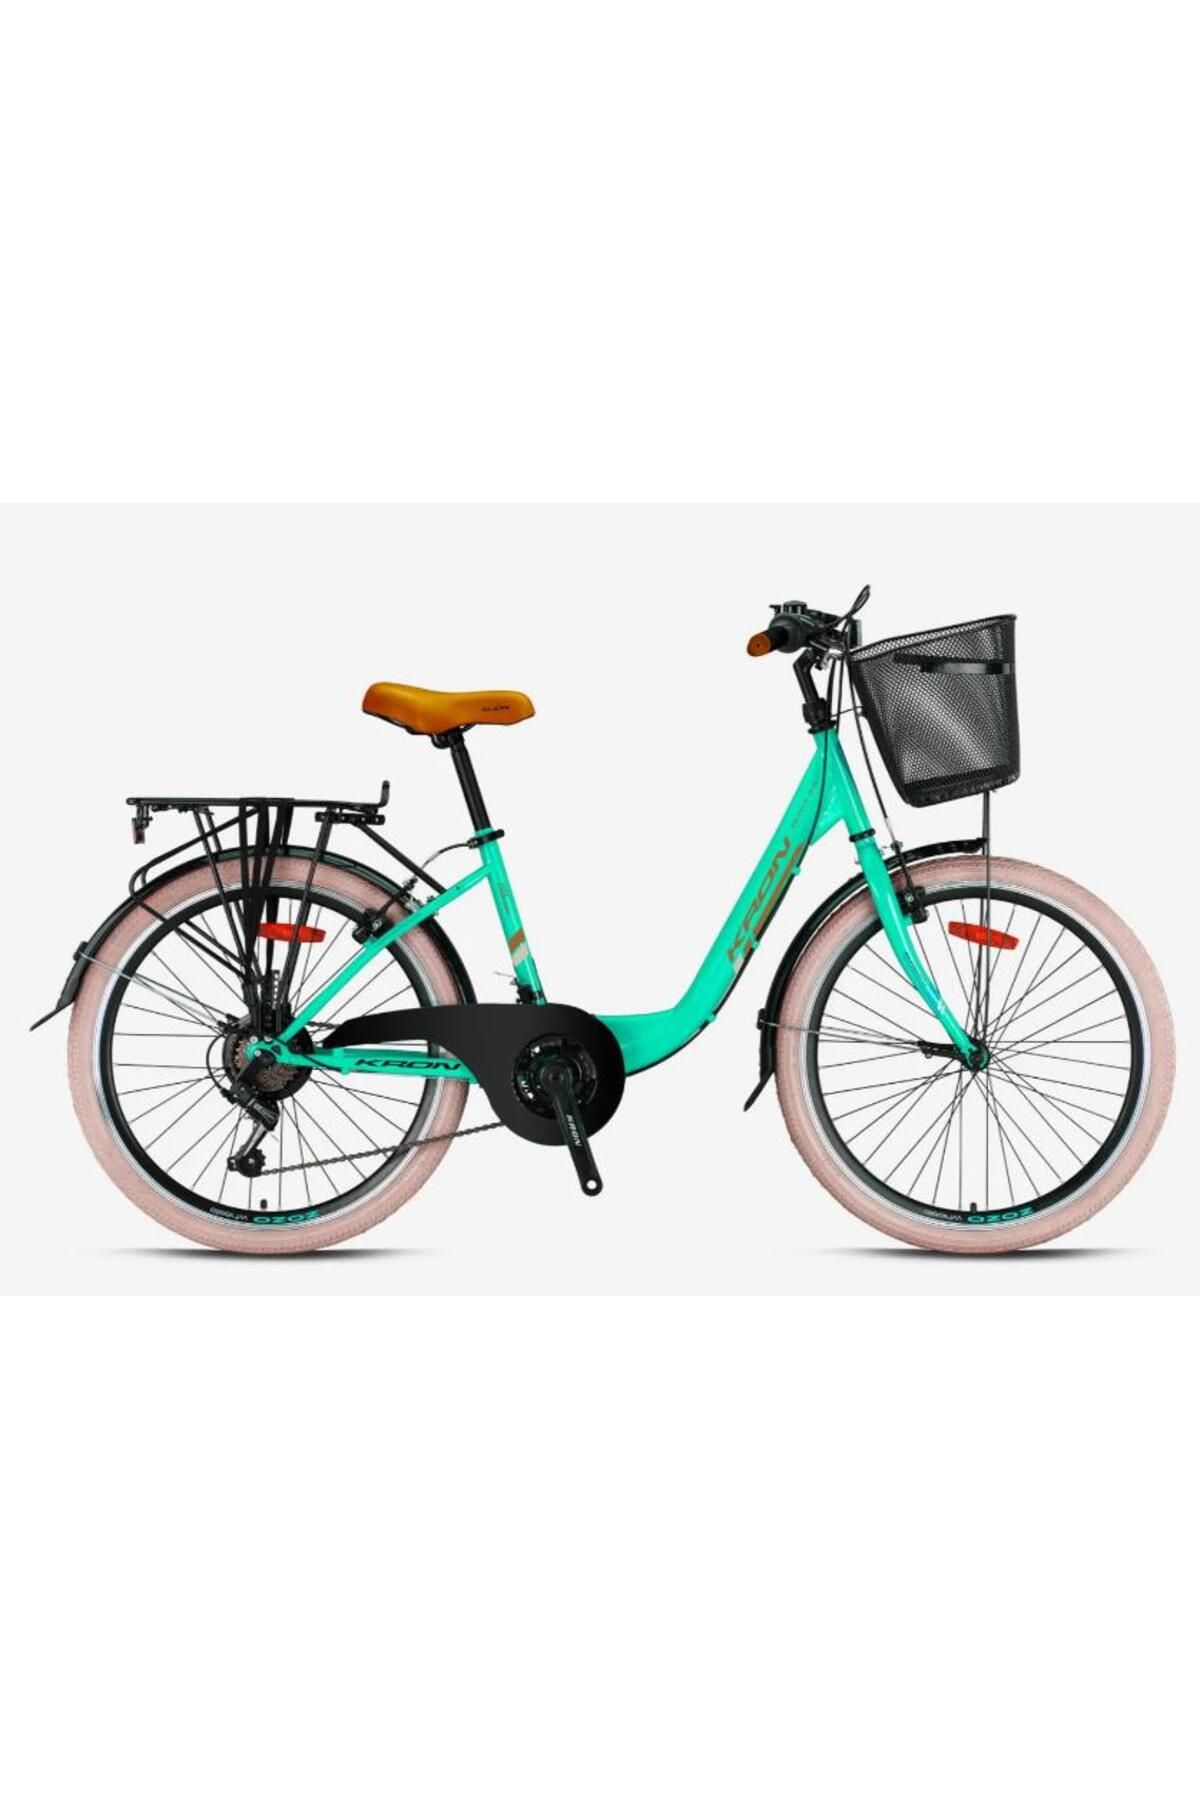 Kron TETRA 3.0 - 24" City Bike - 15' - 21 Vites - V.B. - Mint Yeşili-Kahverengi/Bej